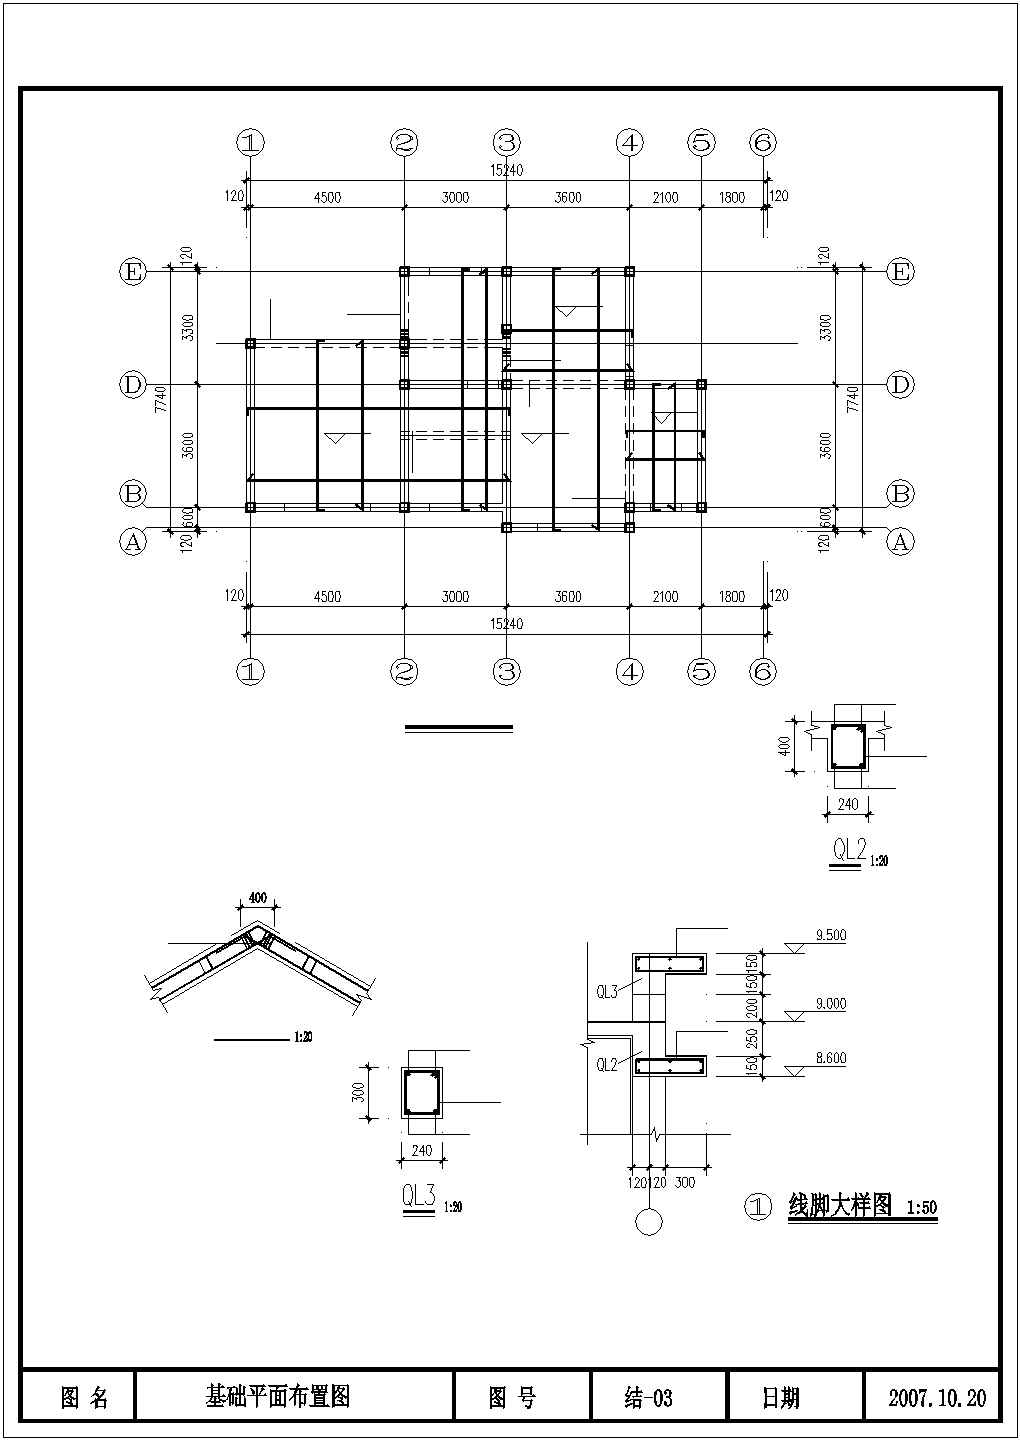 丽水市某村镇3层砖混结构单体别墅住宅楼全套结构设计CAD图纸